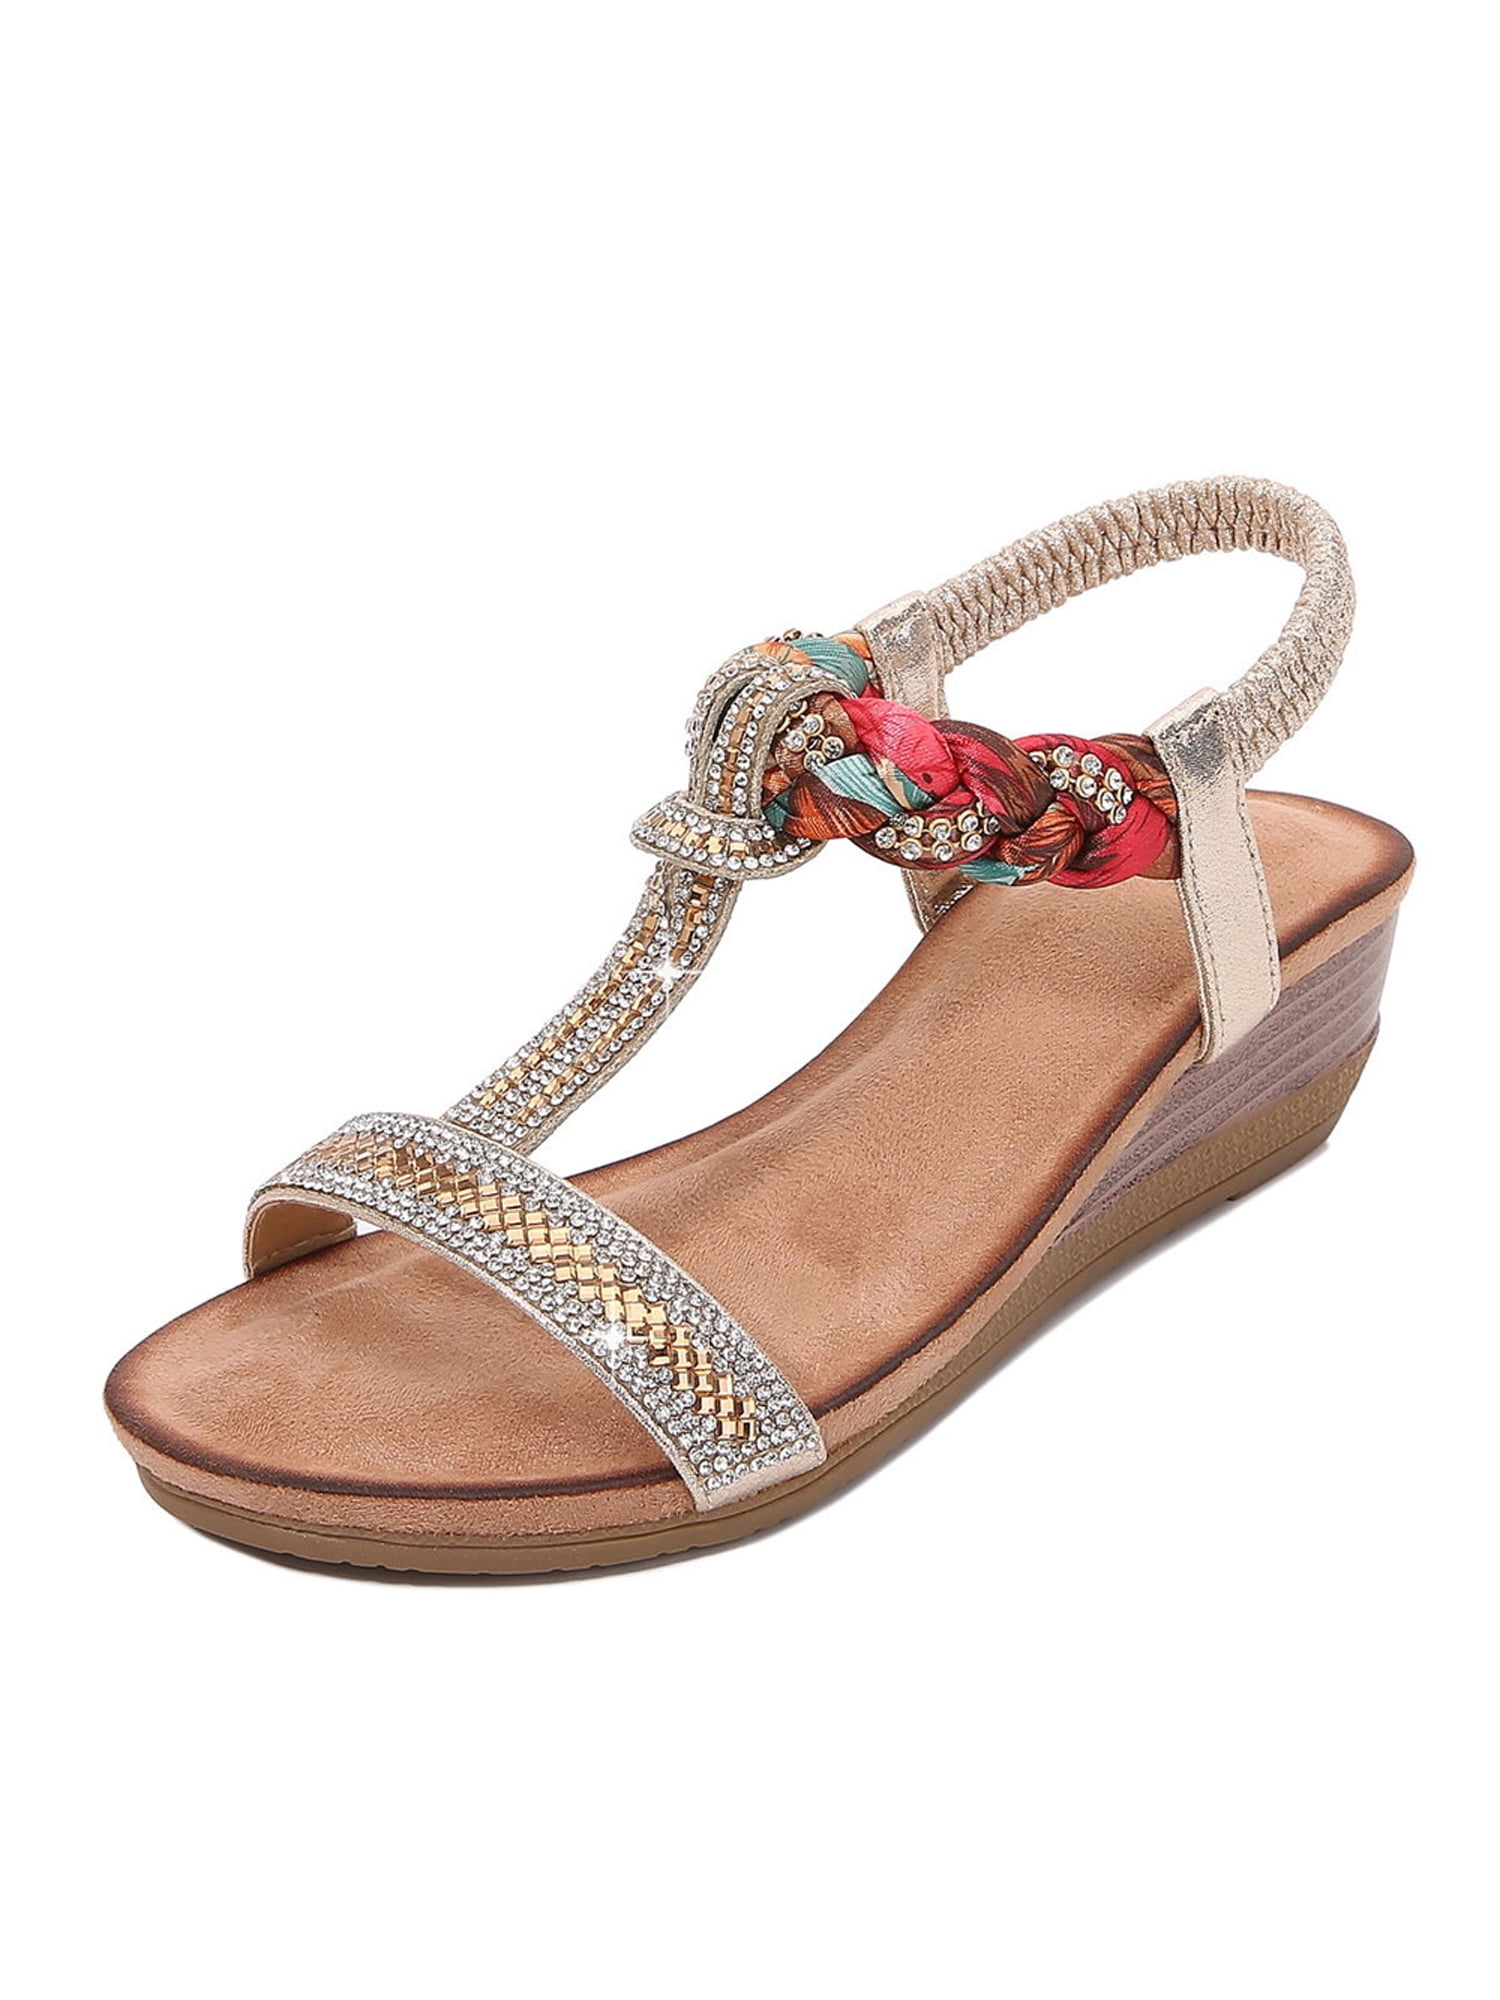 Womens Flower Gem Beaded Slip On Comfort Slingback Summer Sandals Ladies Size